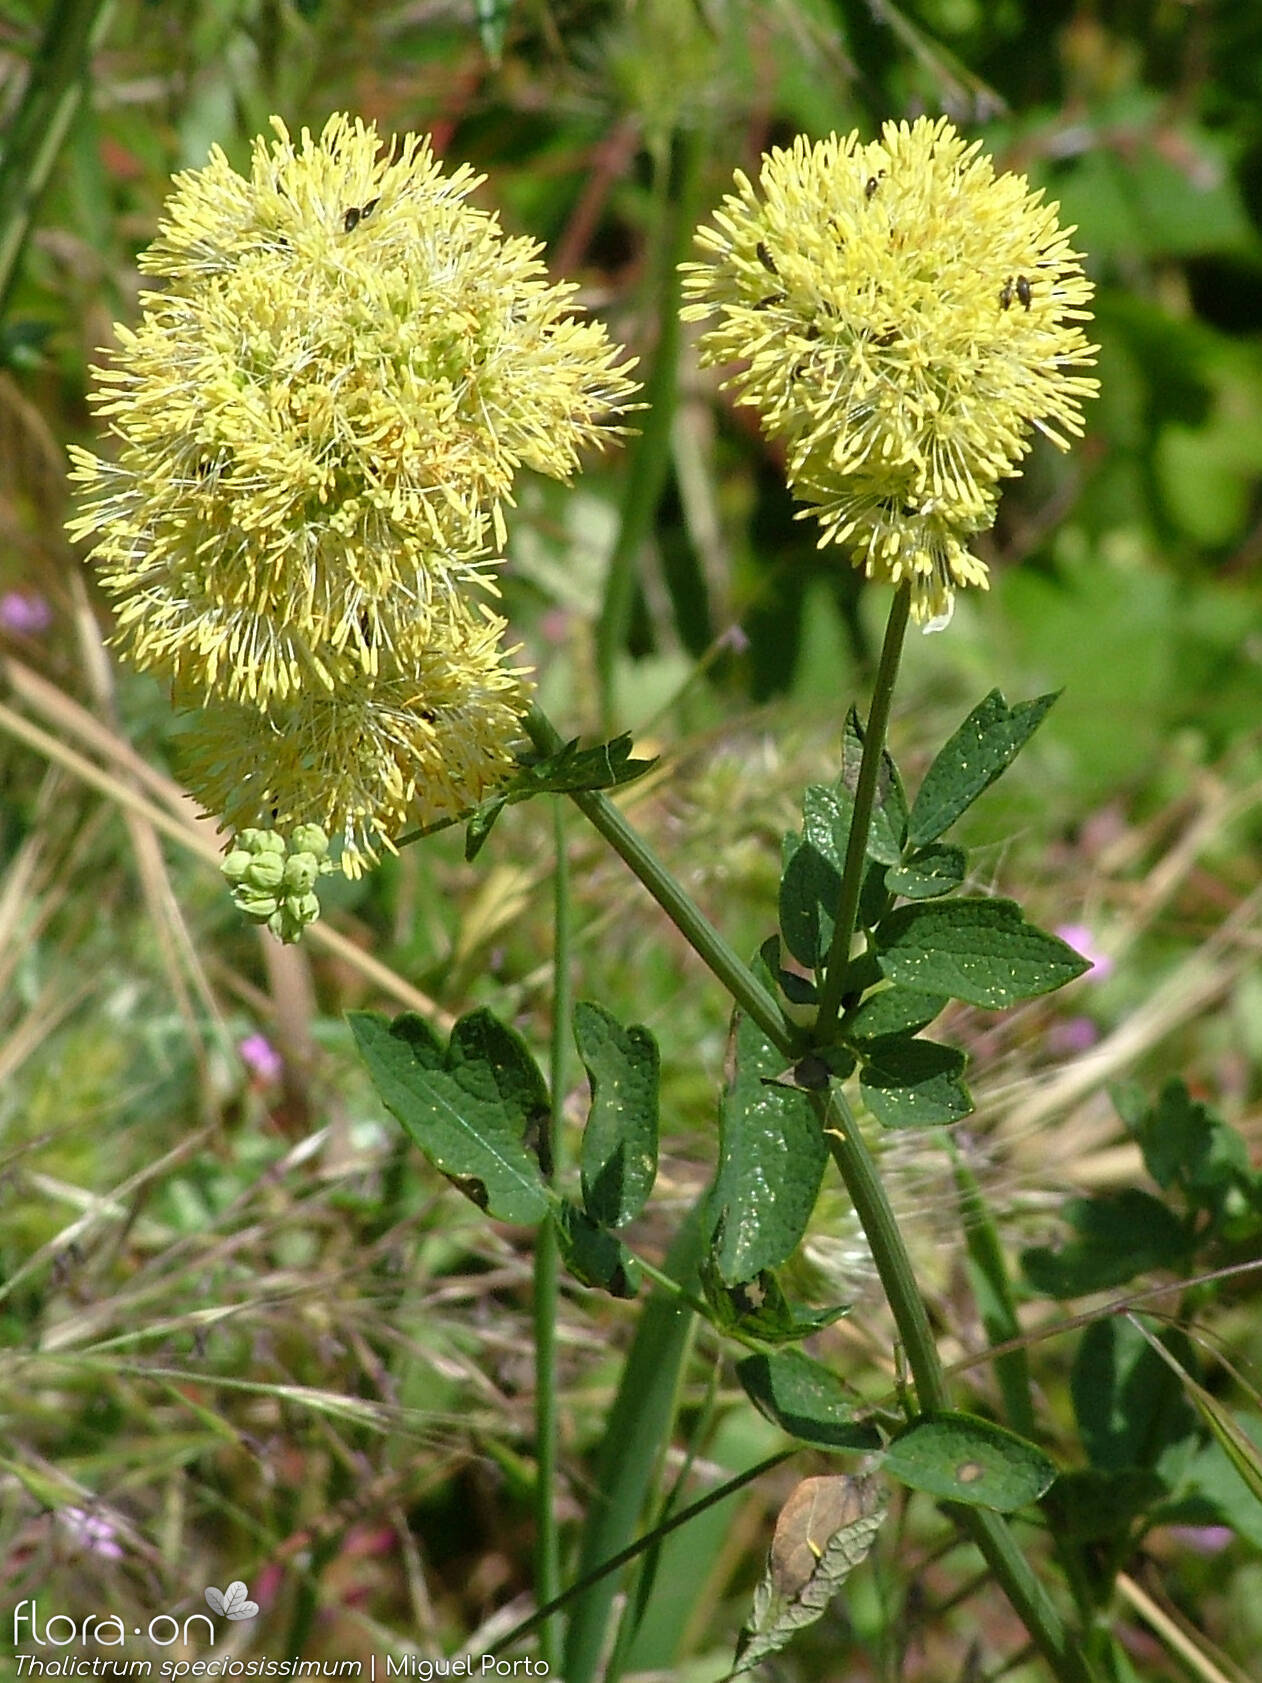 Thalictrum speciosissimum - Flor (geral) | Miguel Porto; CC BY-NC 4.0